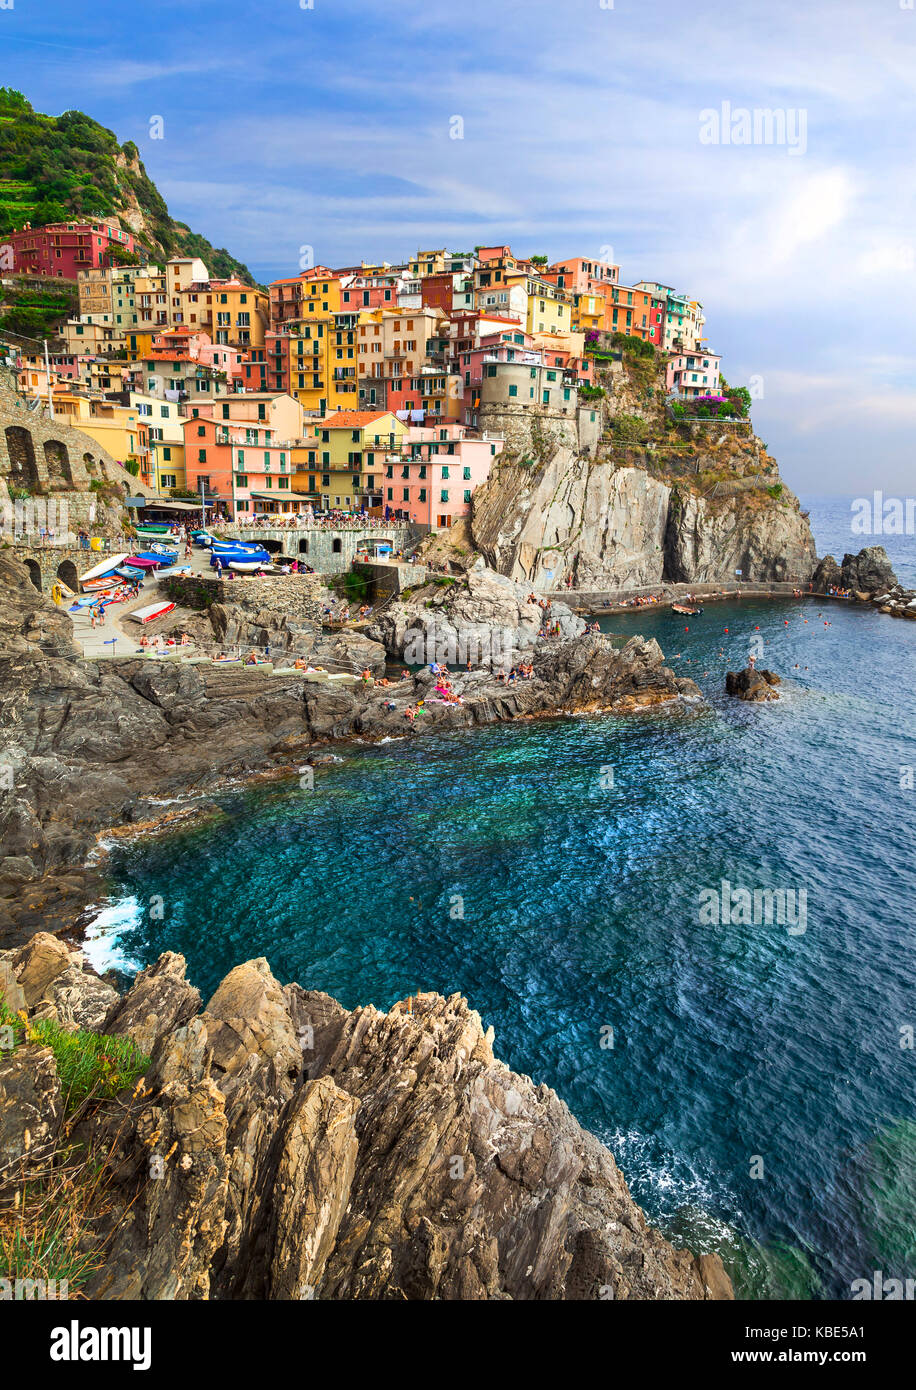 Schönsten italienischen Dörfern - monarola in Cinque Terre, lliguria Stockfoto